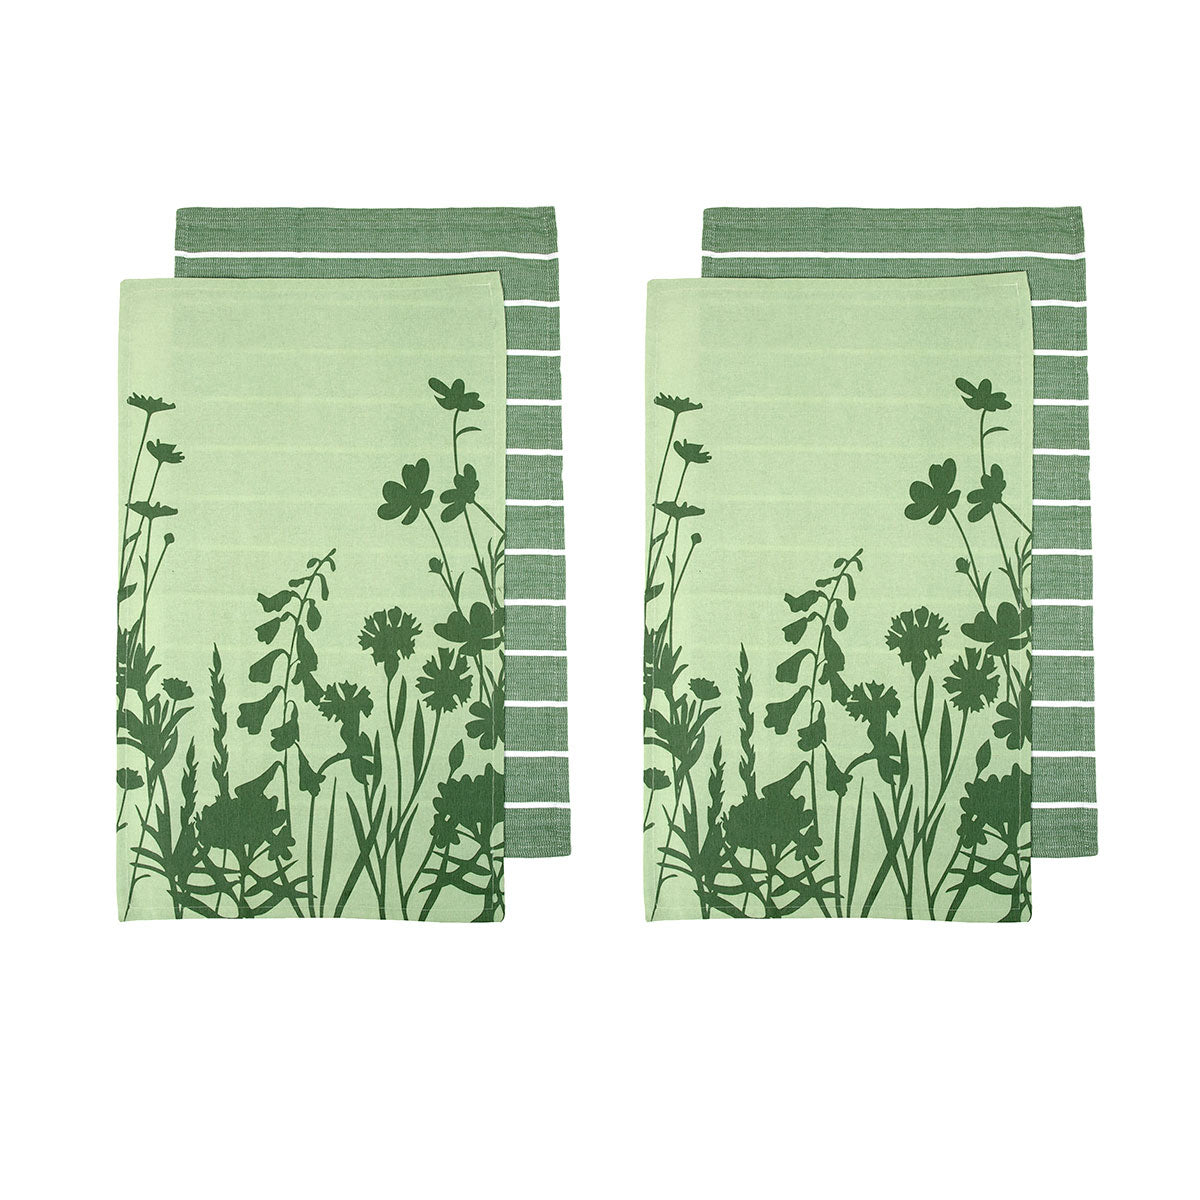 Ladelle Sanctuary Floral Cotton Tea Towels - Green (Set of 4)